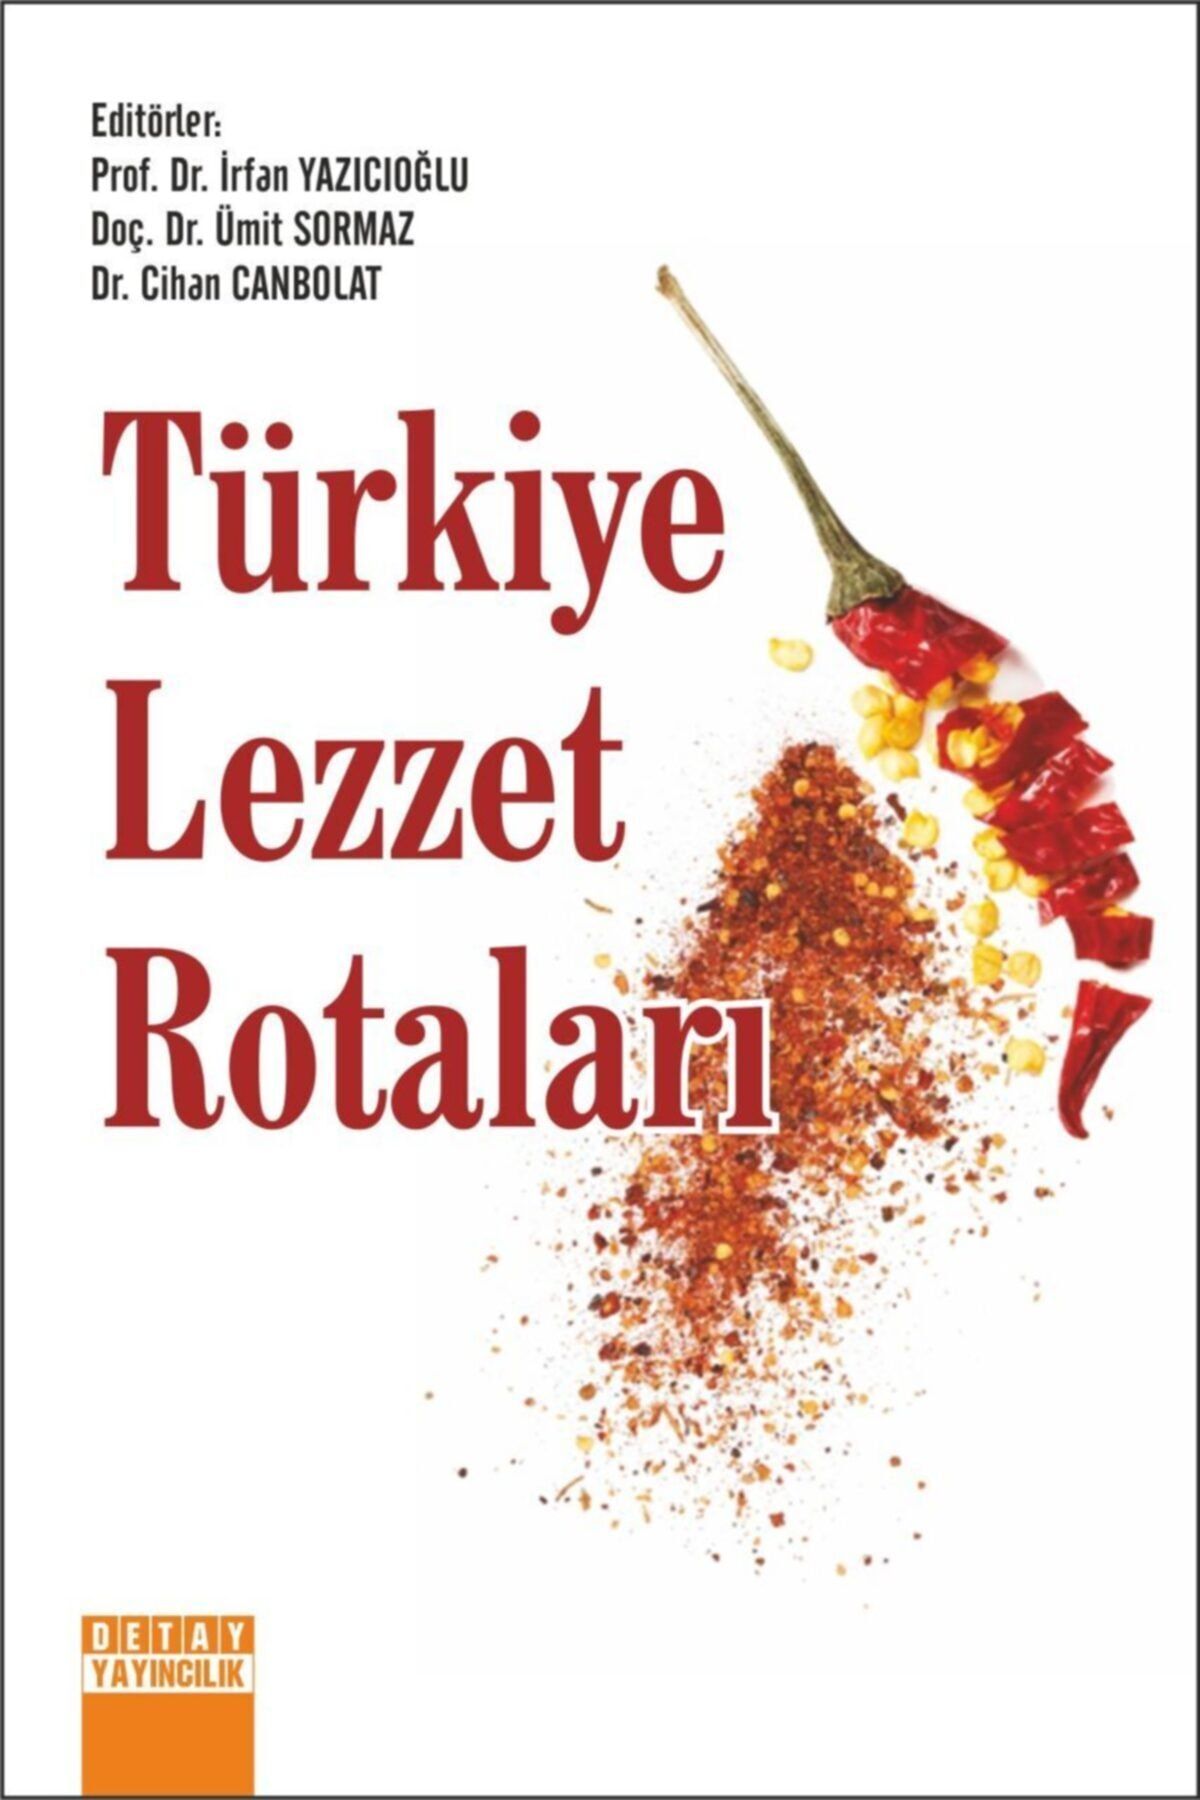 Detay Yayıncılık - Türkiye Lezzet Rotaları / Irfan Yazıcıoğlu - Ümit Sormaz - Cihan Canbolat